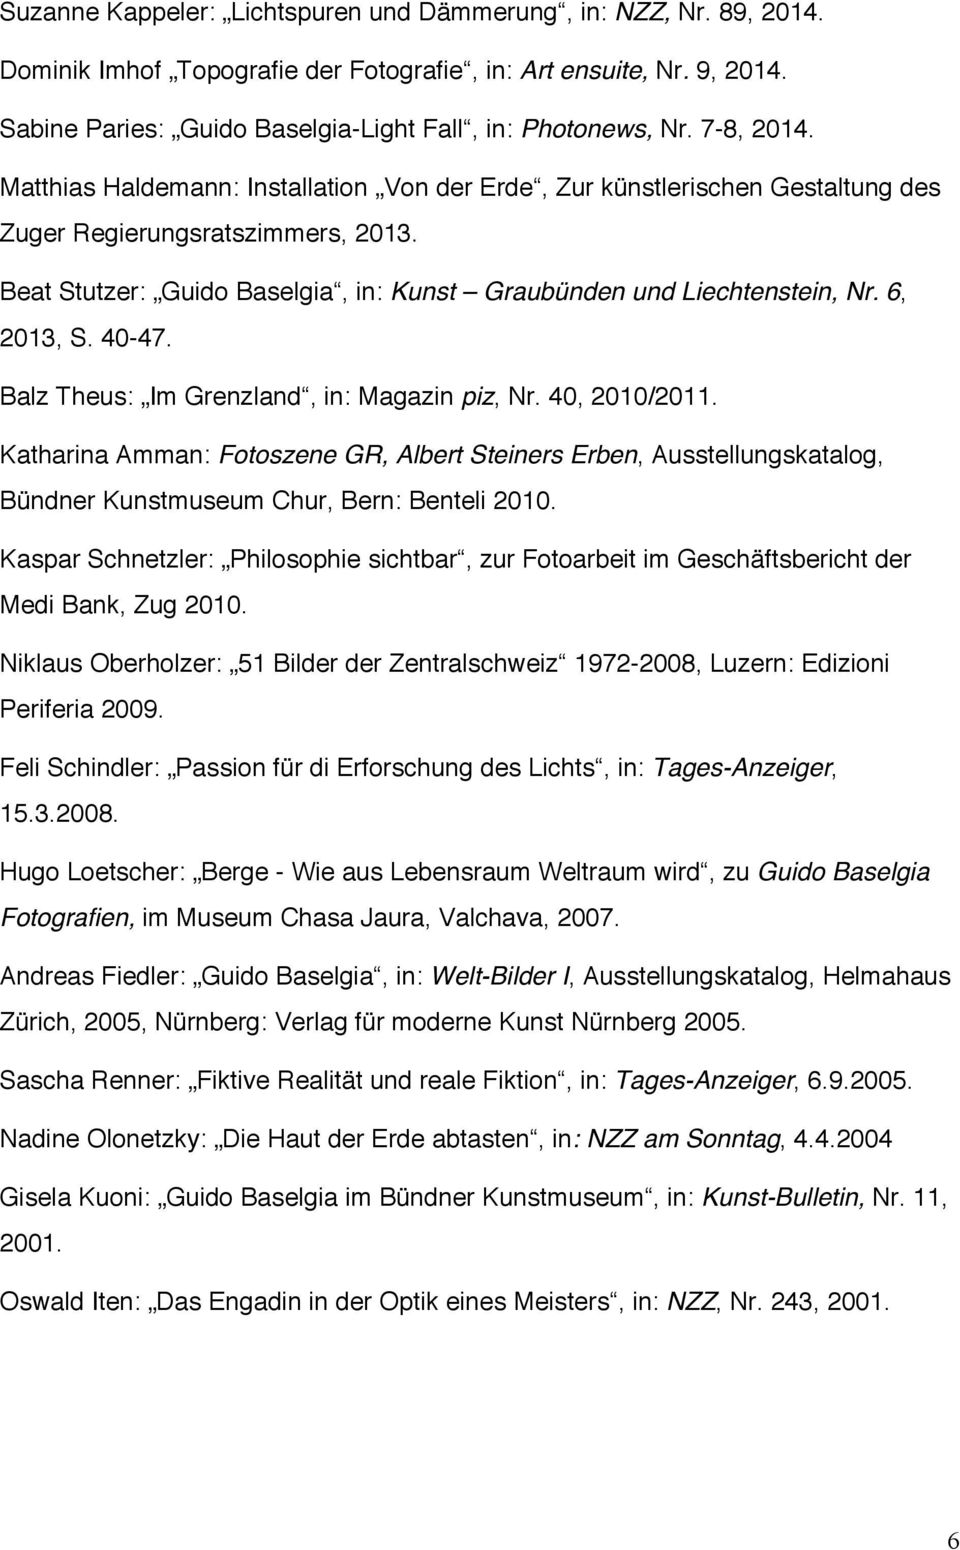 6, 2013, S. 40-47. Balz Theus: Im Grenzland, in: Magazin piz, Nr. 40, 2010/2011.